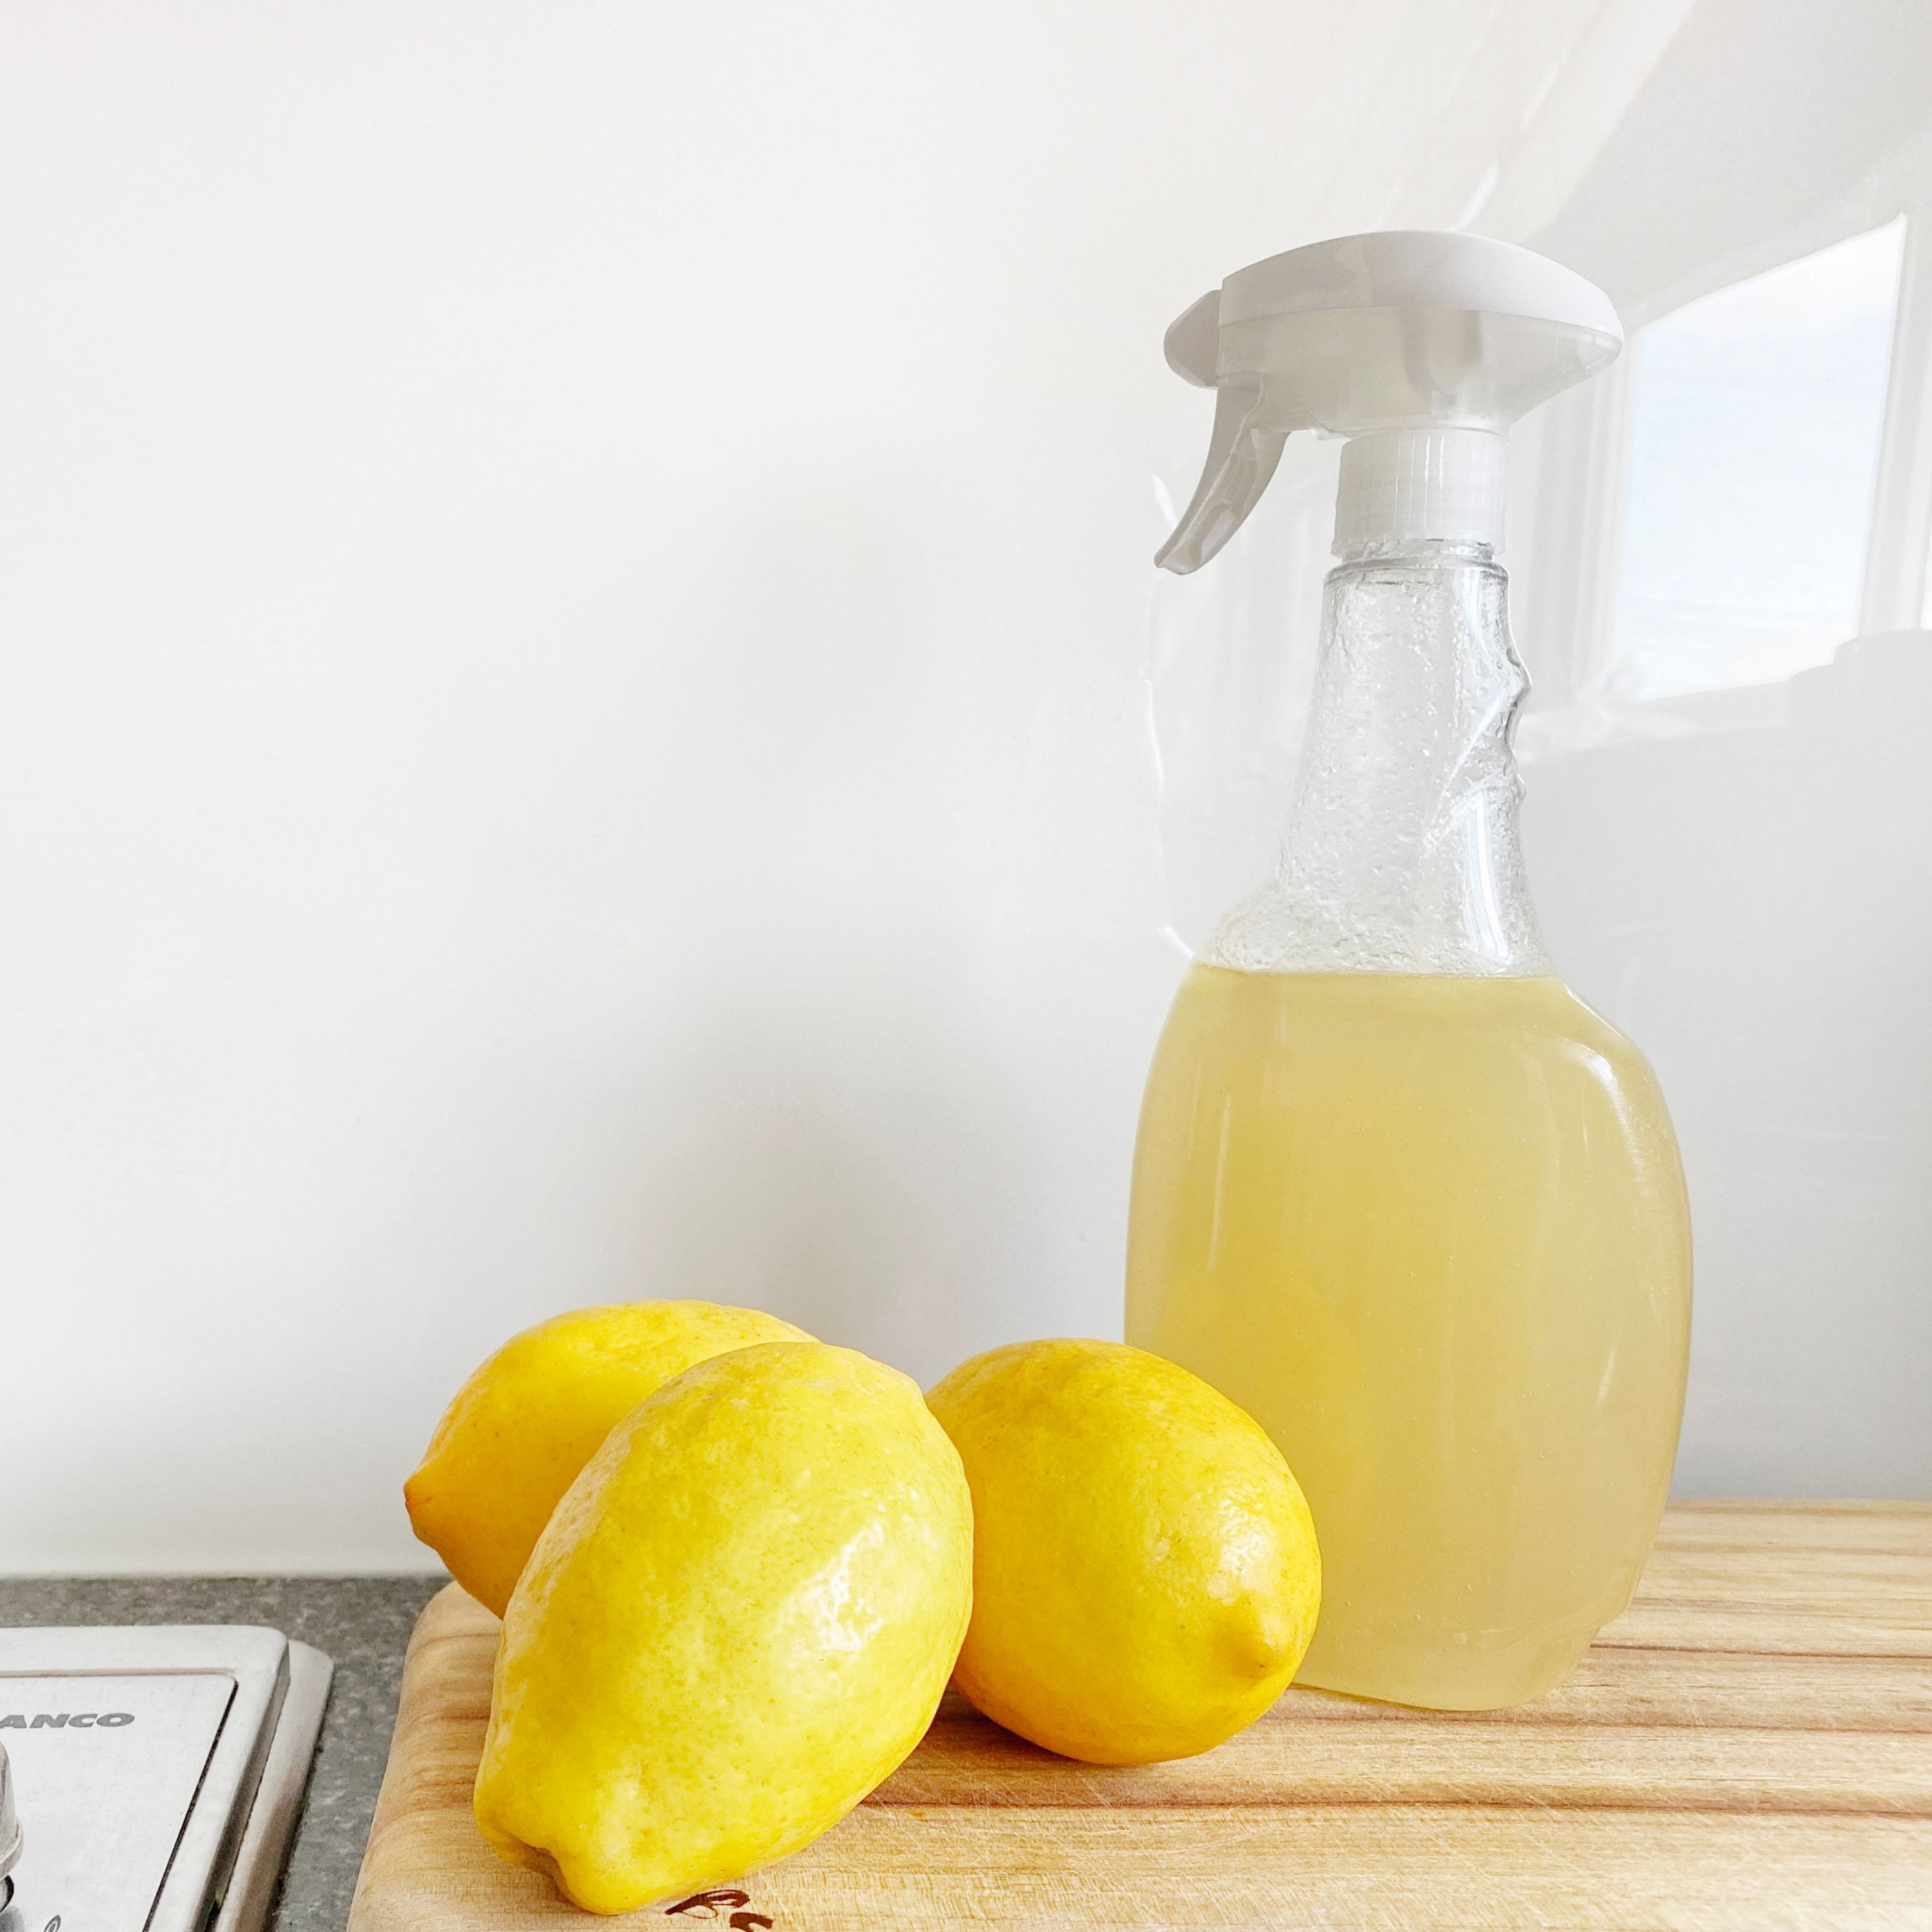 Trois citrons jaunes à côté d'un pulvérisateur contenant du vinaigre